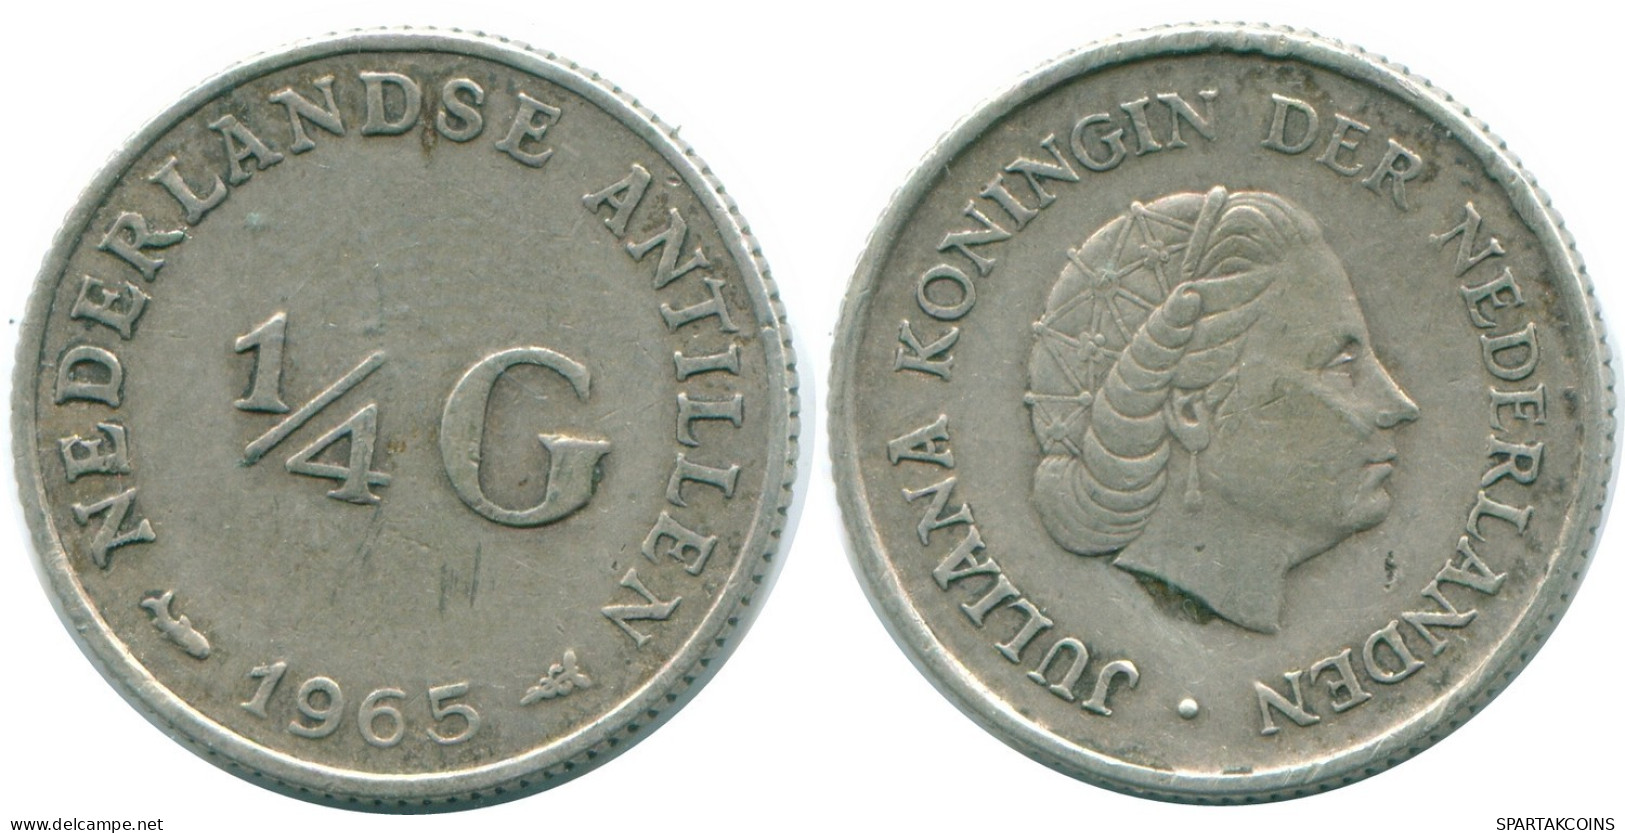 1/4 GULDEN 1965 NIEDERLÄNDISCHE ANTILLEN SILBER Koloniale Münze #NL11352.4.D.A - Antille Olandesi